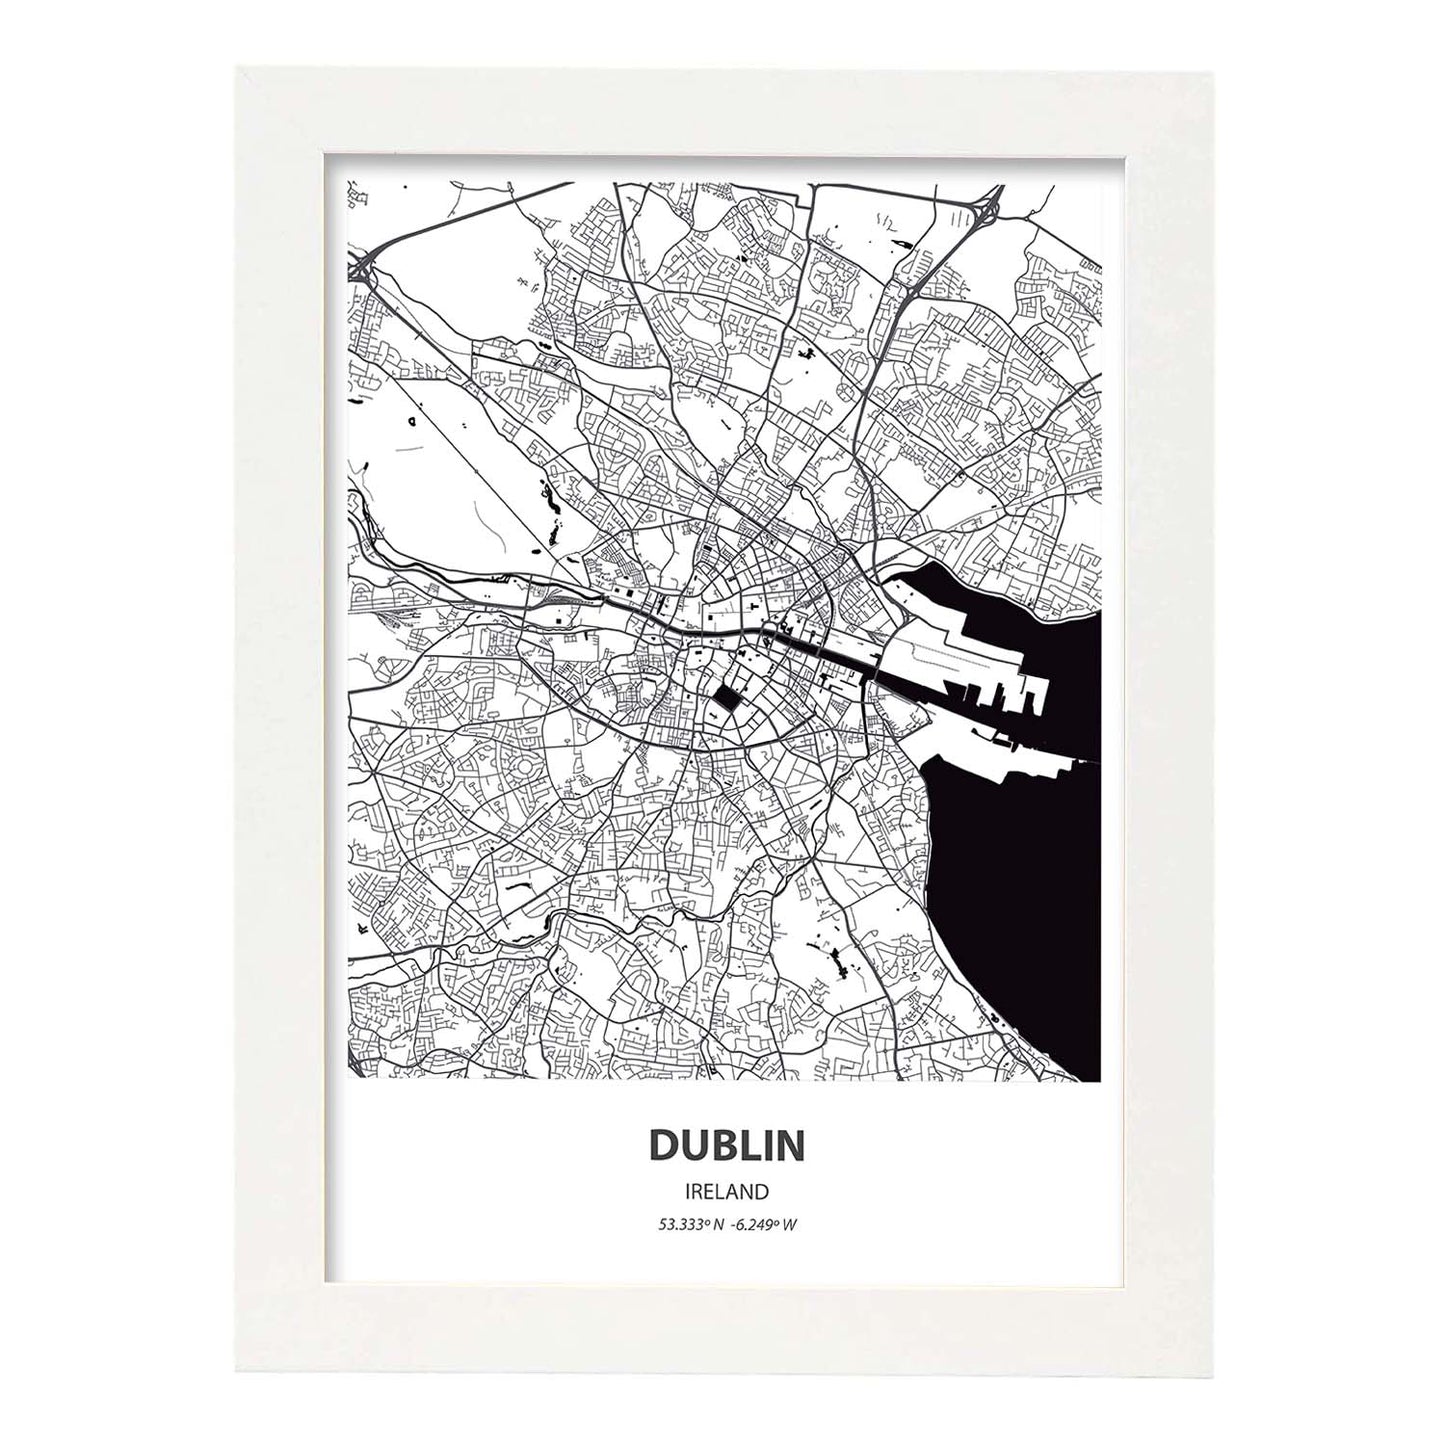 Poster con mapa de Dublin - Irlanda. Láminas de ciudades de Europa con mares y ríos en color negro.-Artwork-Nacnic-A4-Marco Blanco-Nacnic Estudio SL